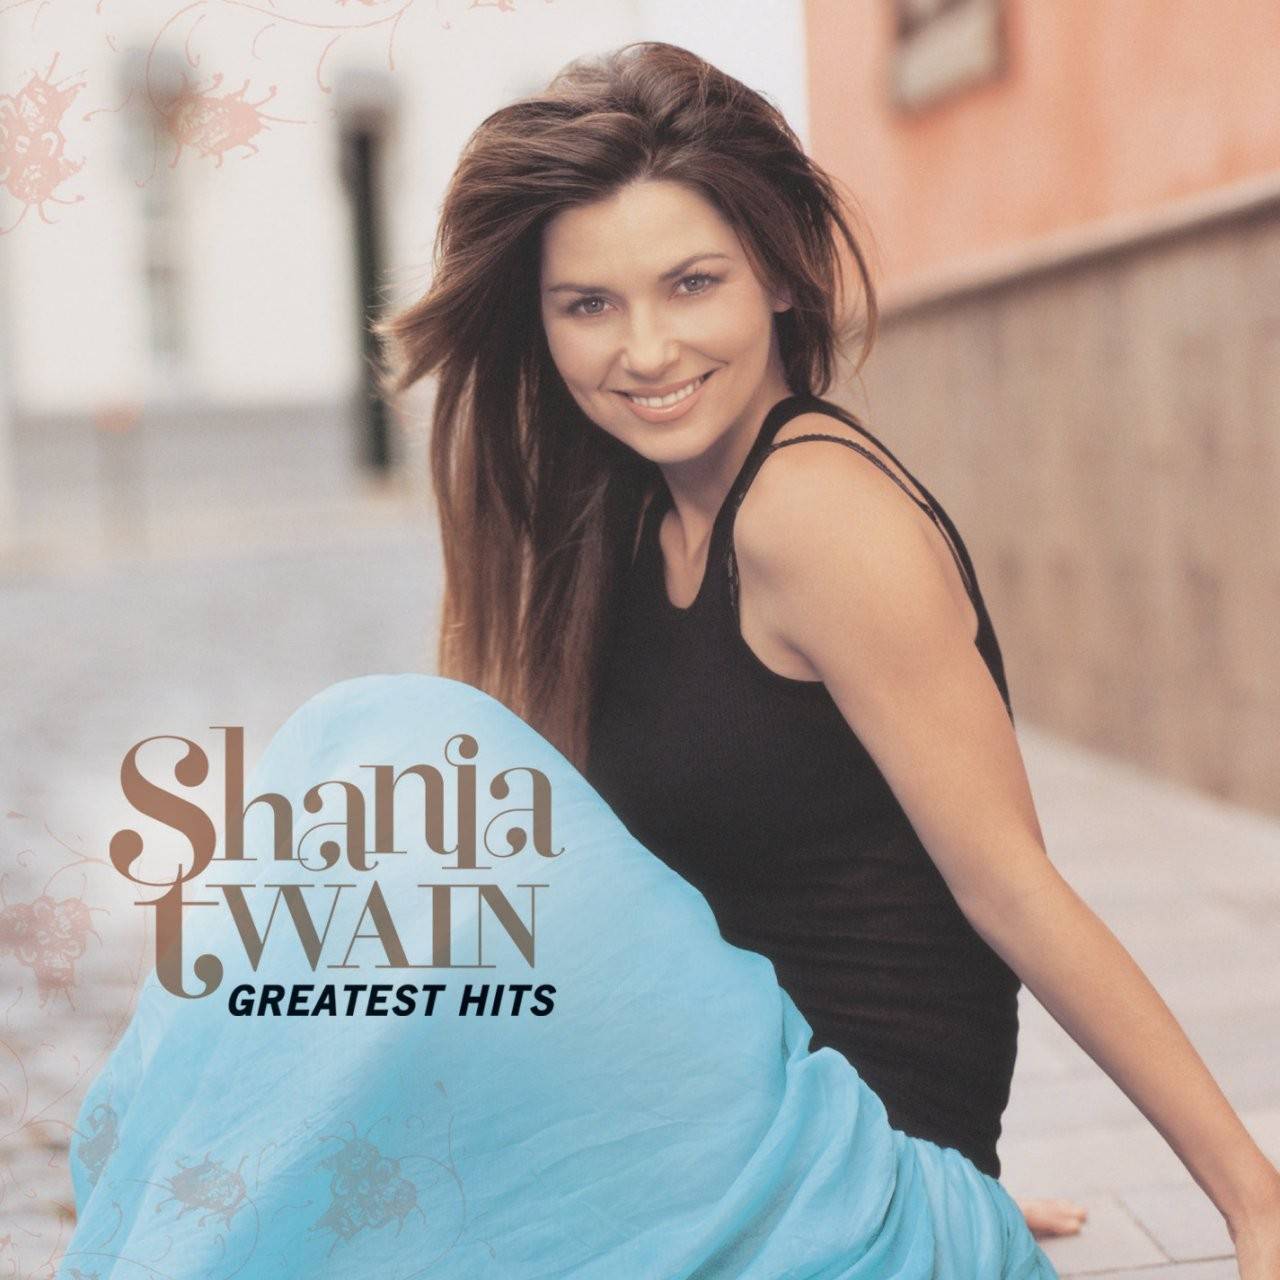 shania-twain-greatest-hits